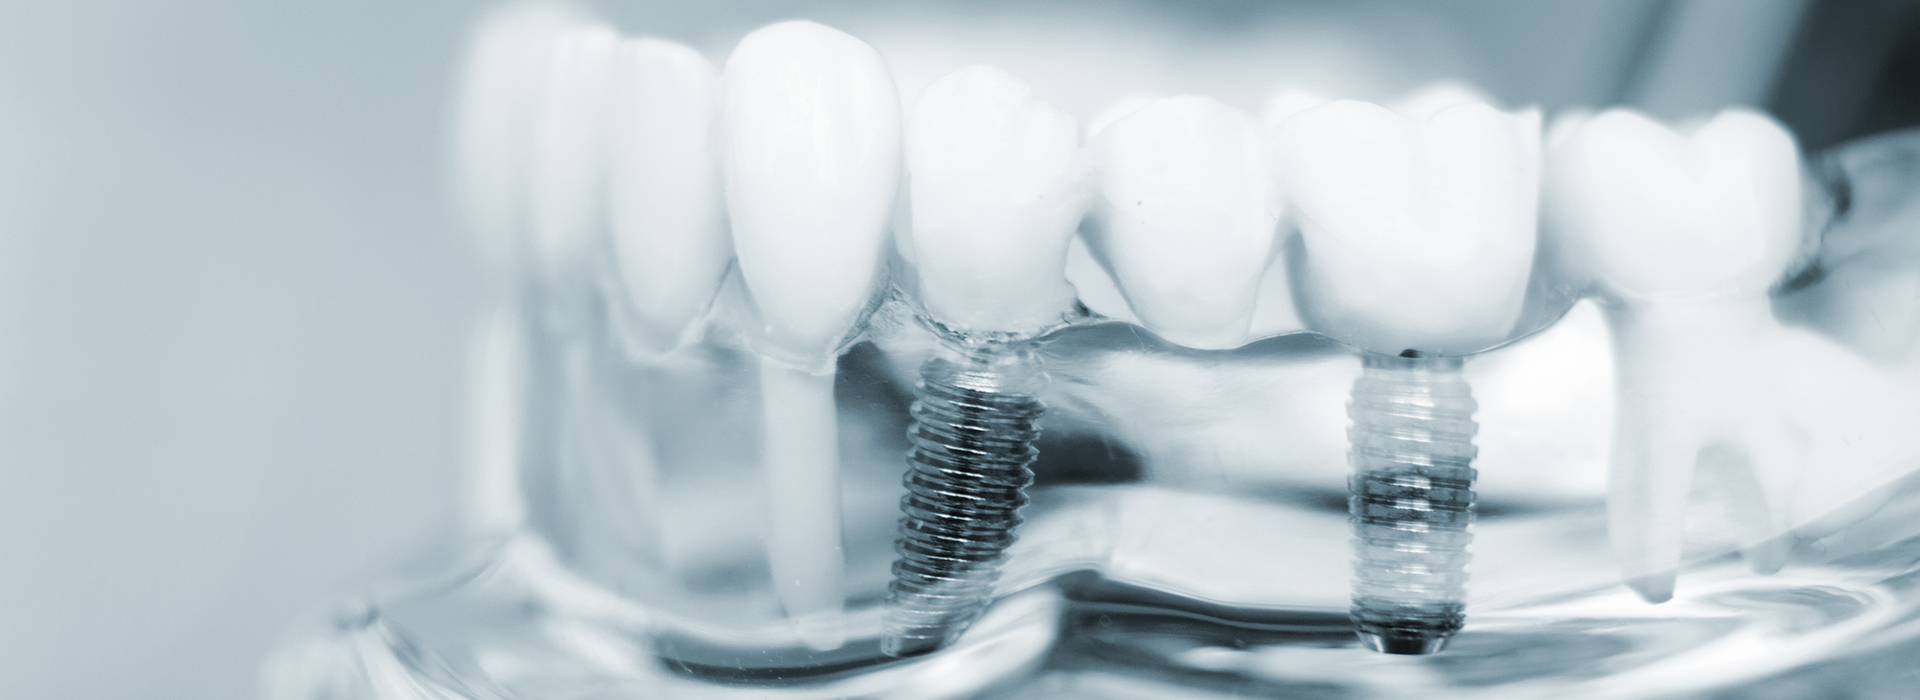 Dental Implants in Lewisville